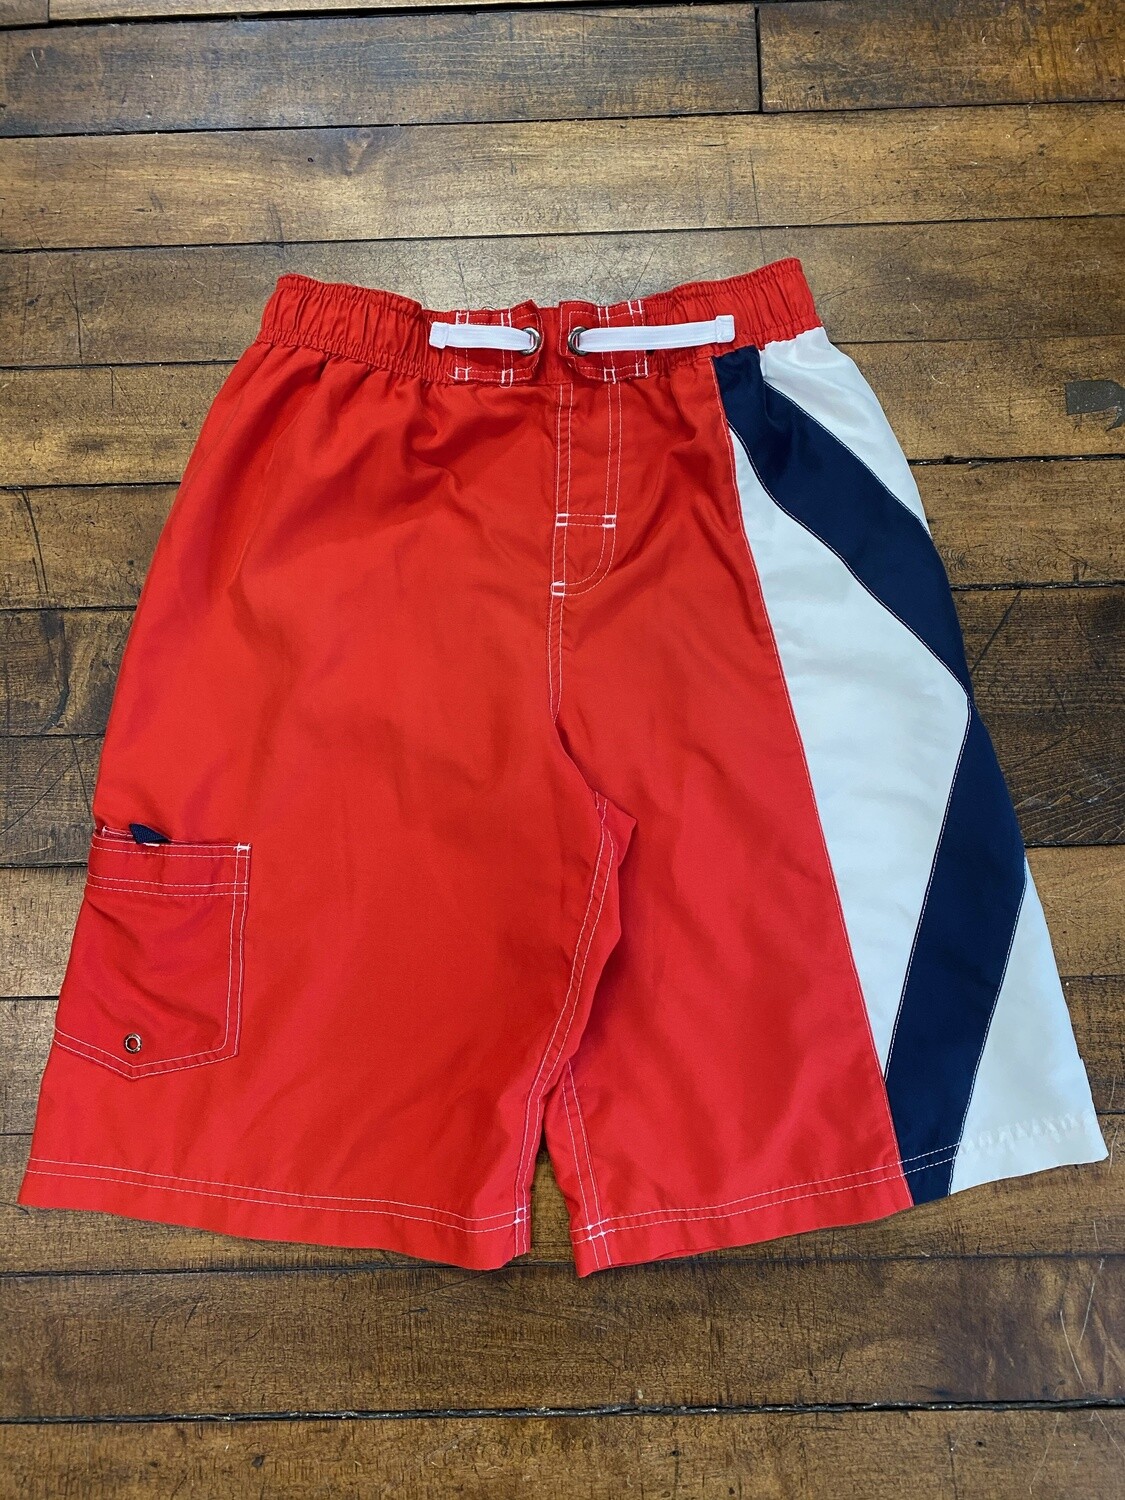 Nautica Swim Shorts (L/XL)